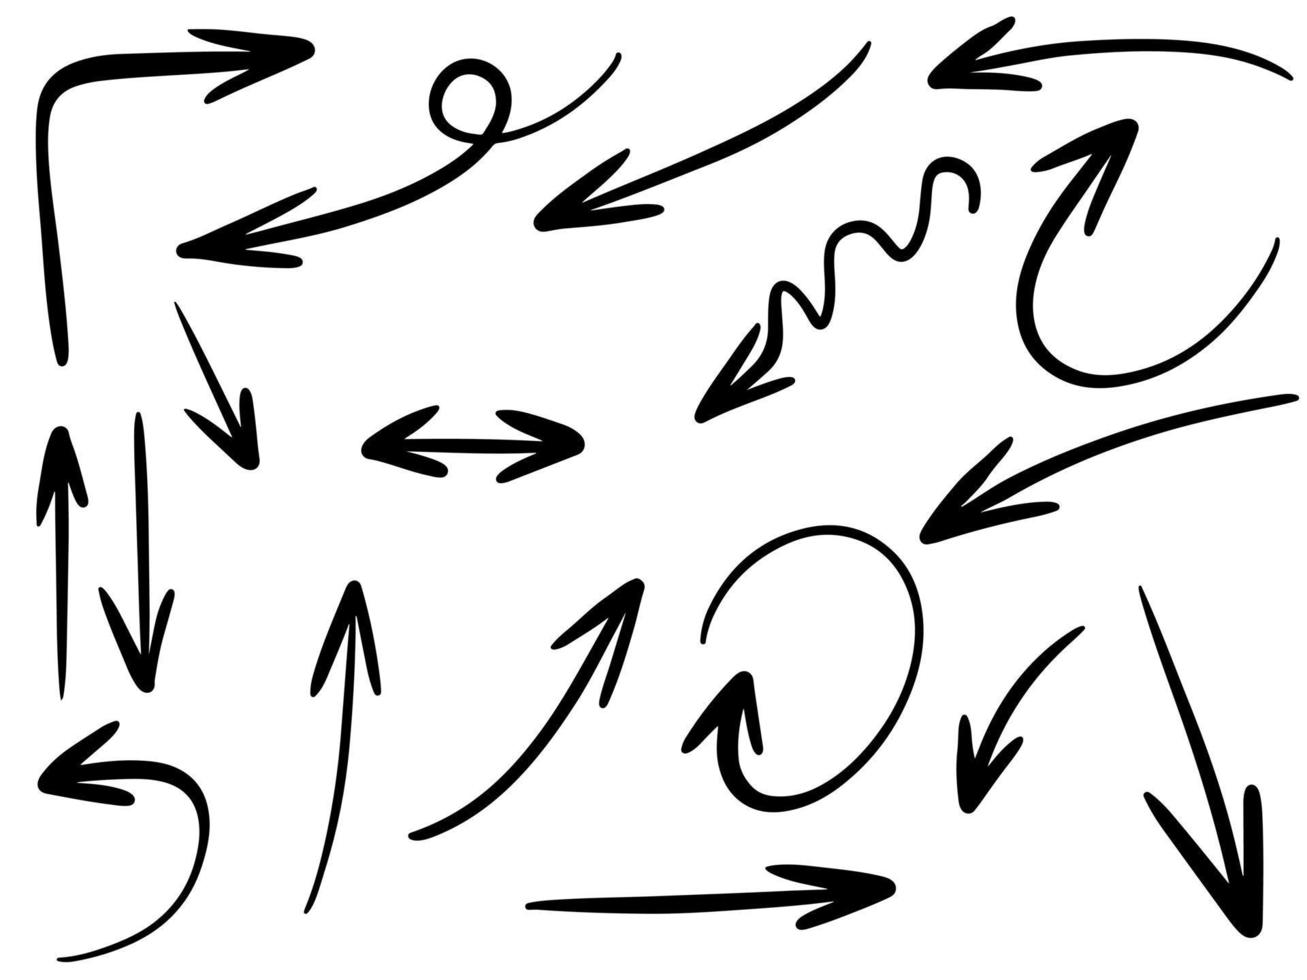 conjunto de iconos de flecha dibujados a mano aislado sobre fondo blanco. Ilustración de vector de doodle.